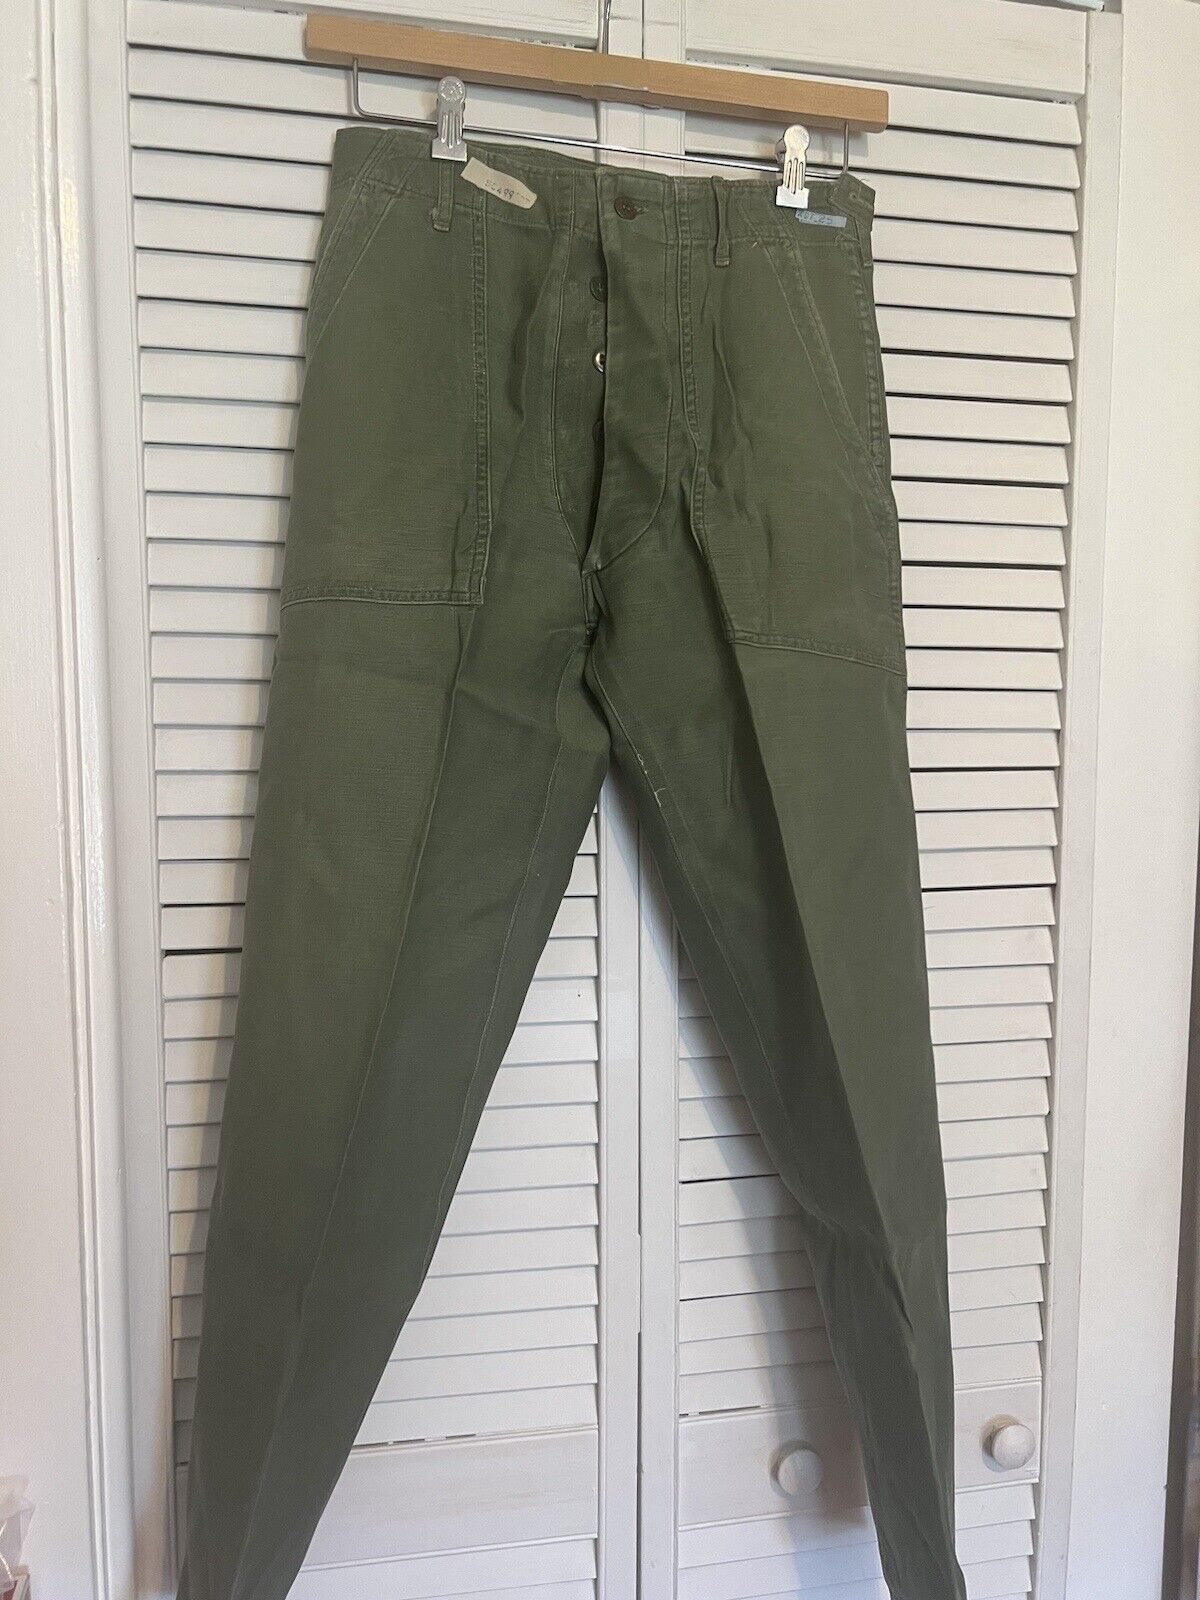 ARMY Vintage Men\'s Size 30x31 Pants 60s Vietnam War Green Color